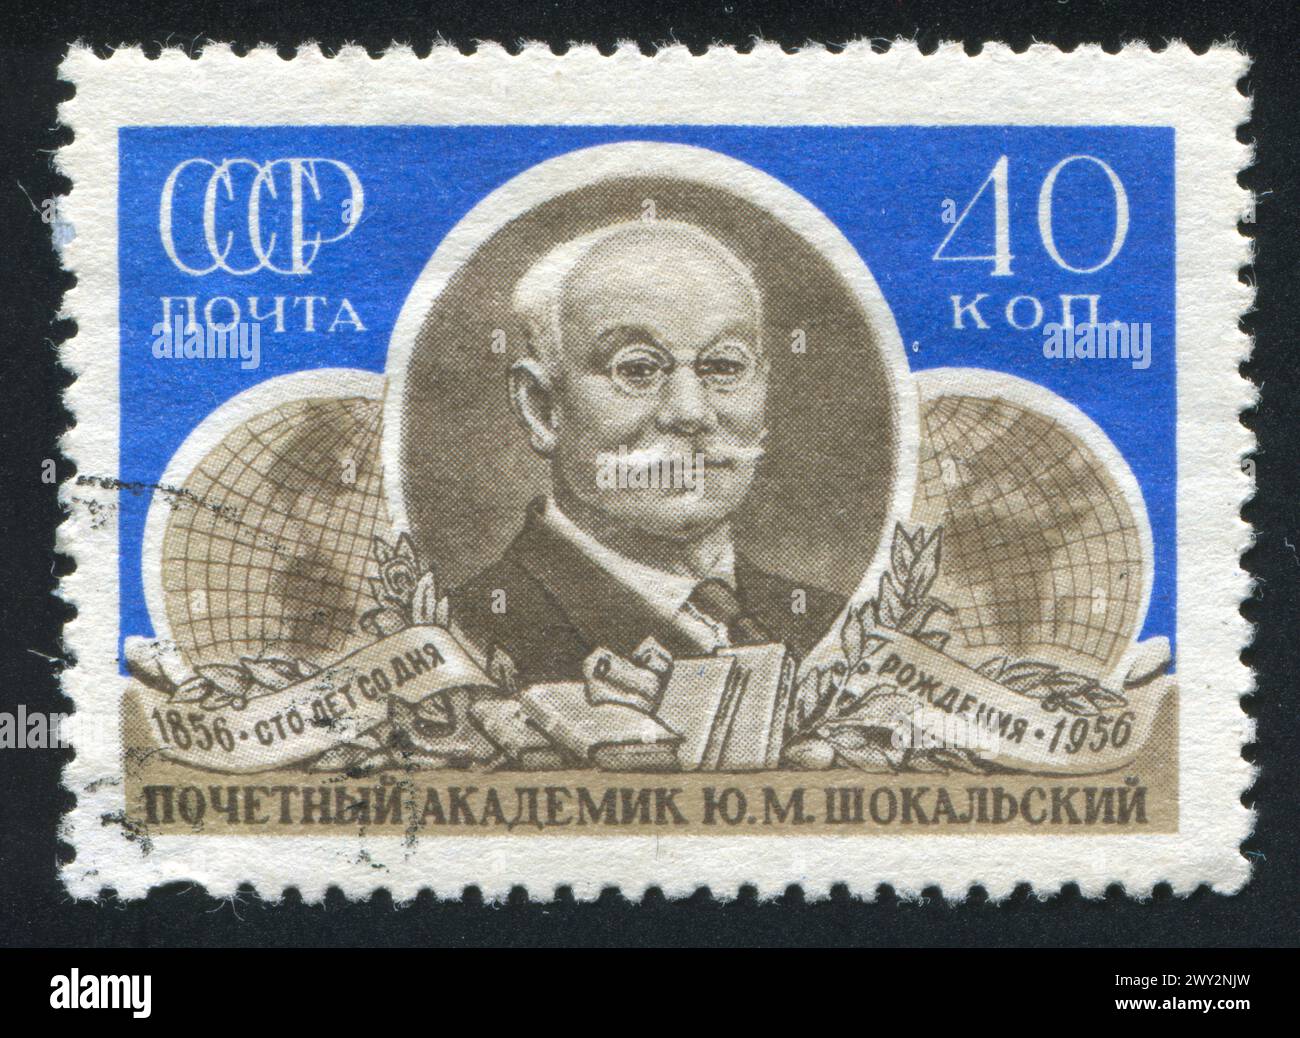 RUSSIE - VERS 1956 : timbre imprimé par la Russie, montrant Yuli Shokalski, océanographe et géodésie, vers 1956 Banque D'Images